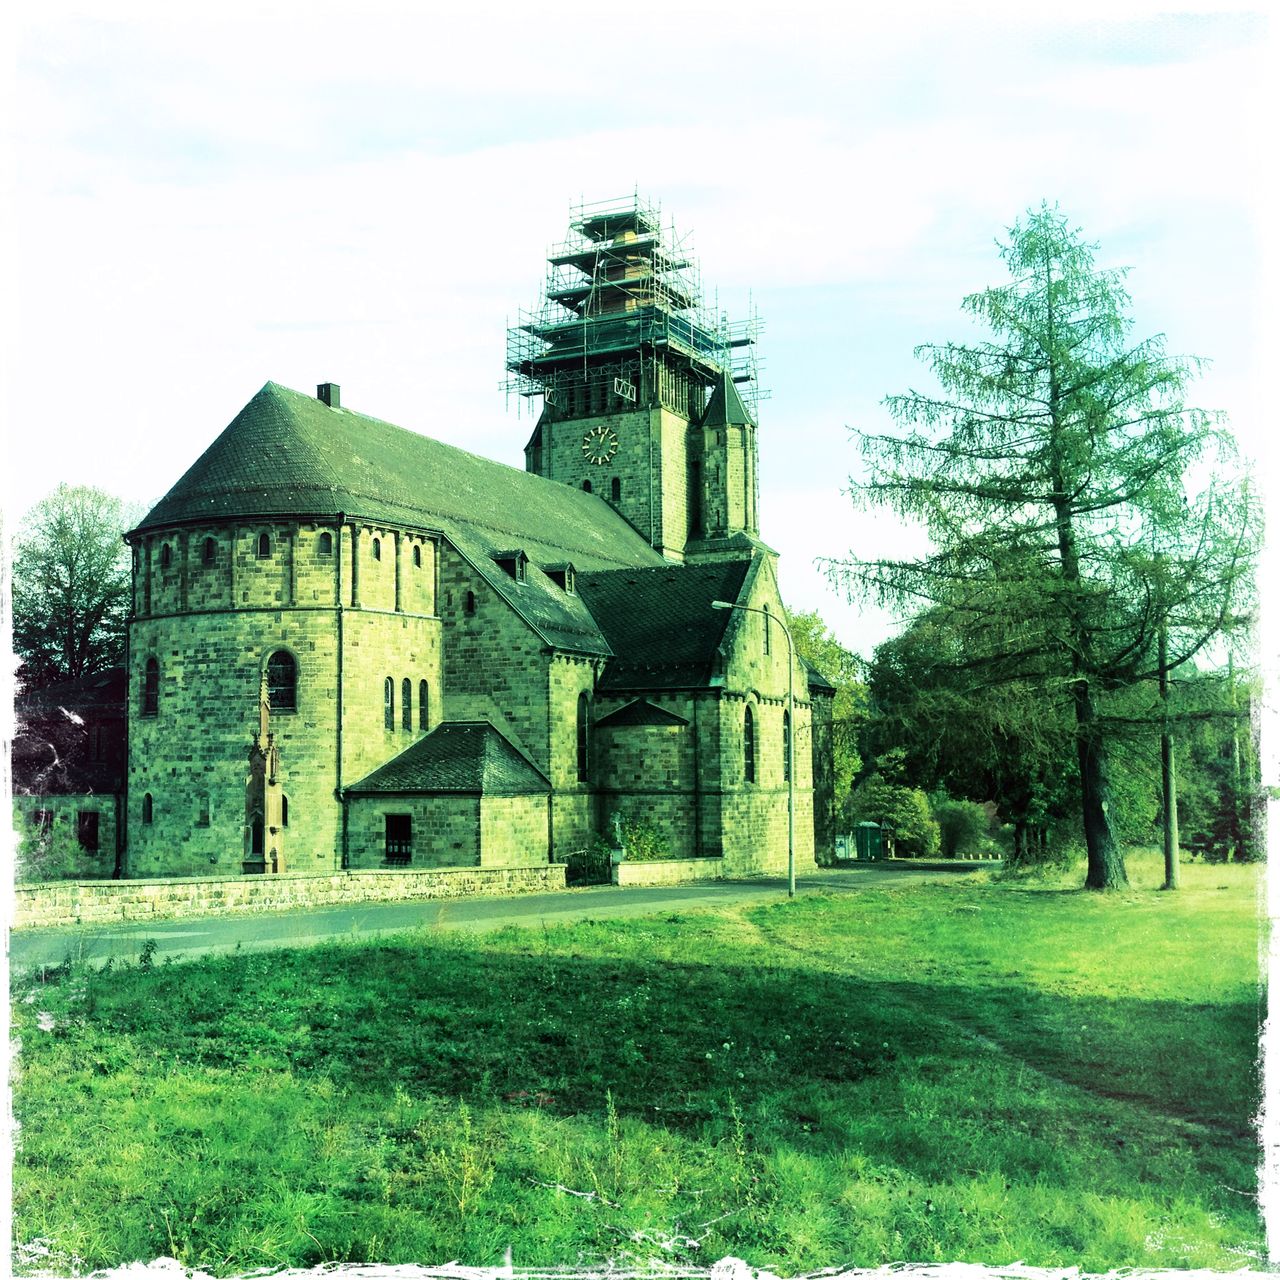 von der Rückseite blickt man auf ein Kirchenschiff. Das Bild ist grünlich verfremdet. Der Kirchturm ist von einem Gerüst umgeben. Neben der Kirche rechts steht ein Nadelbaum, der fast so hoch ist wie der Turm.